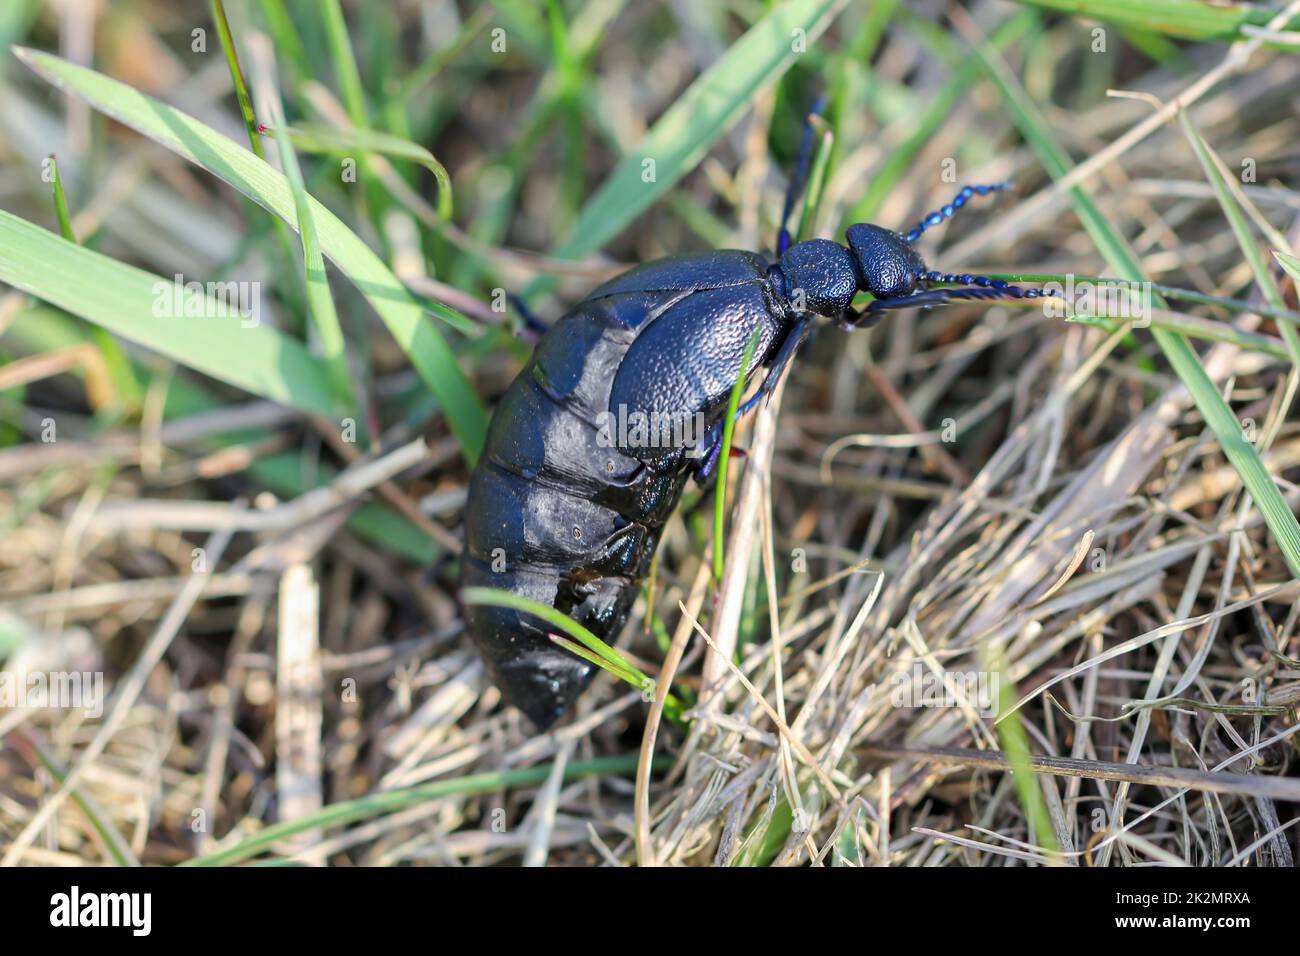 Porträt eines schwarz-blauen Ölkäfers. Diese Käfer sind giftig und geben eine giftige gelbe Substanz ab. Stockfoto